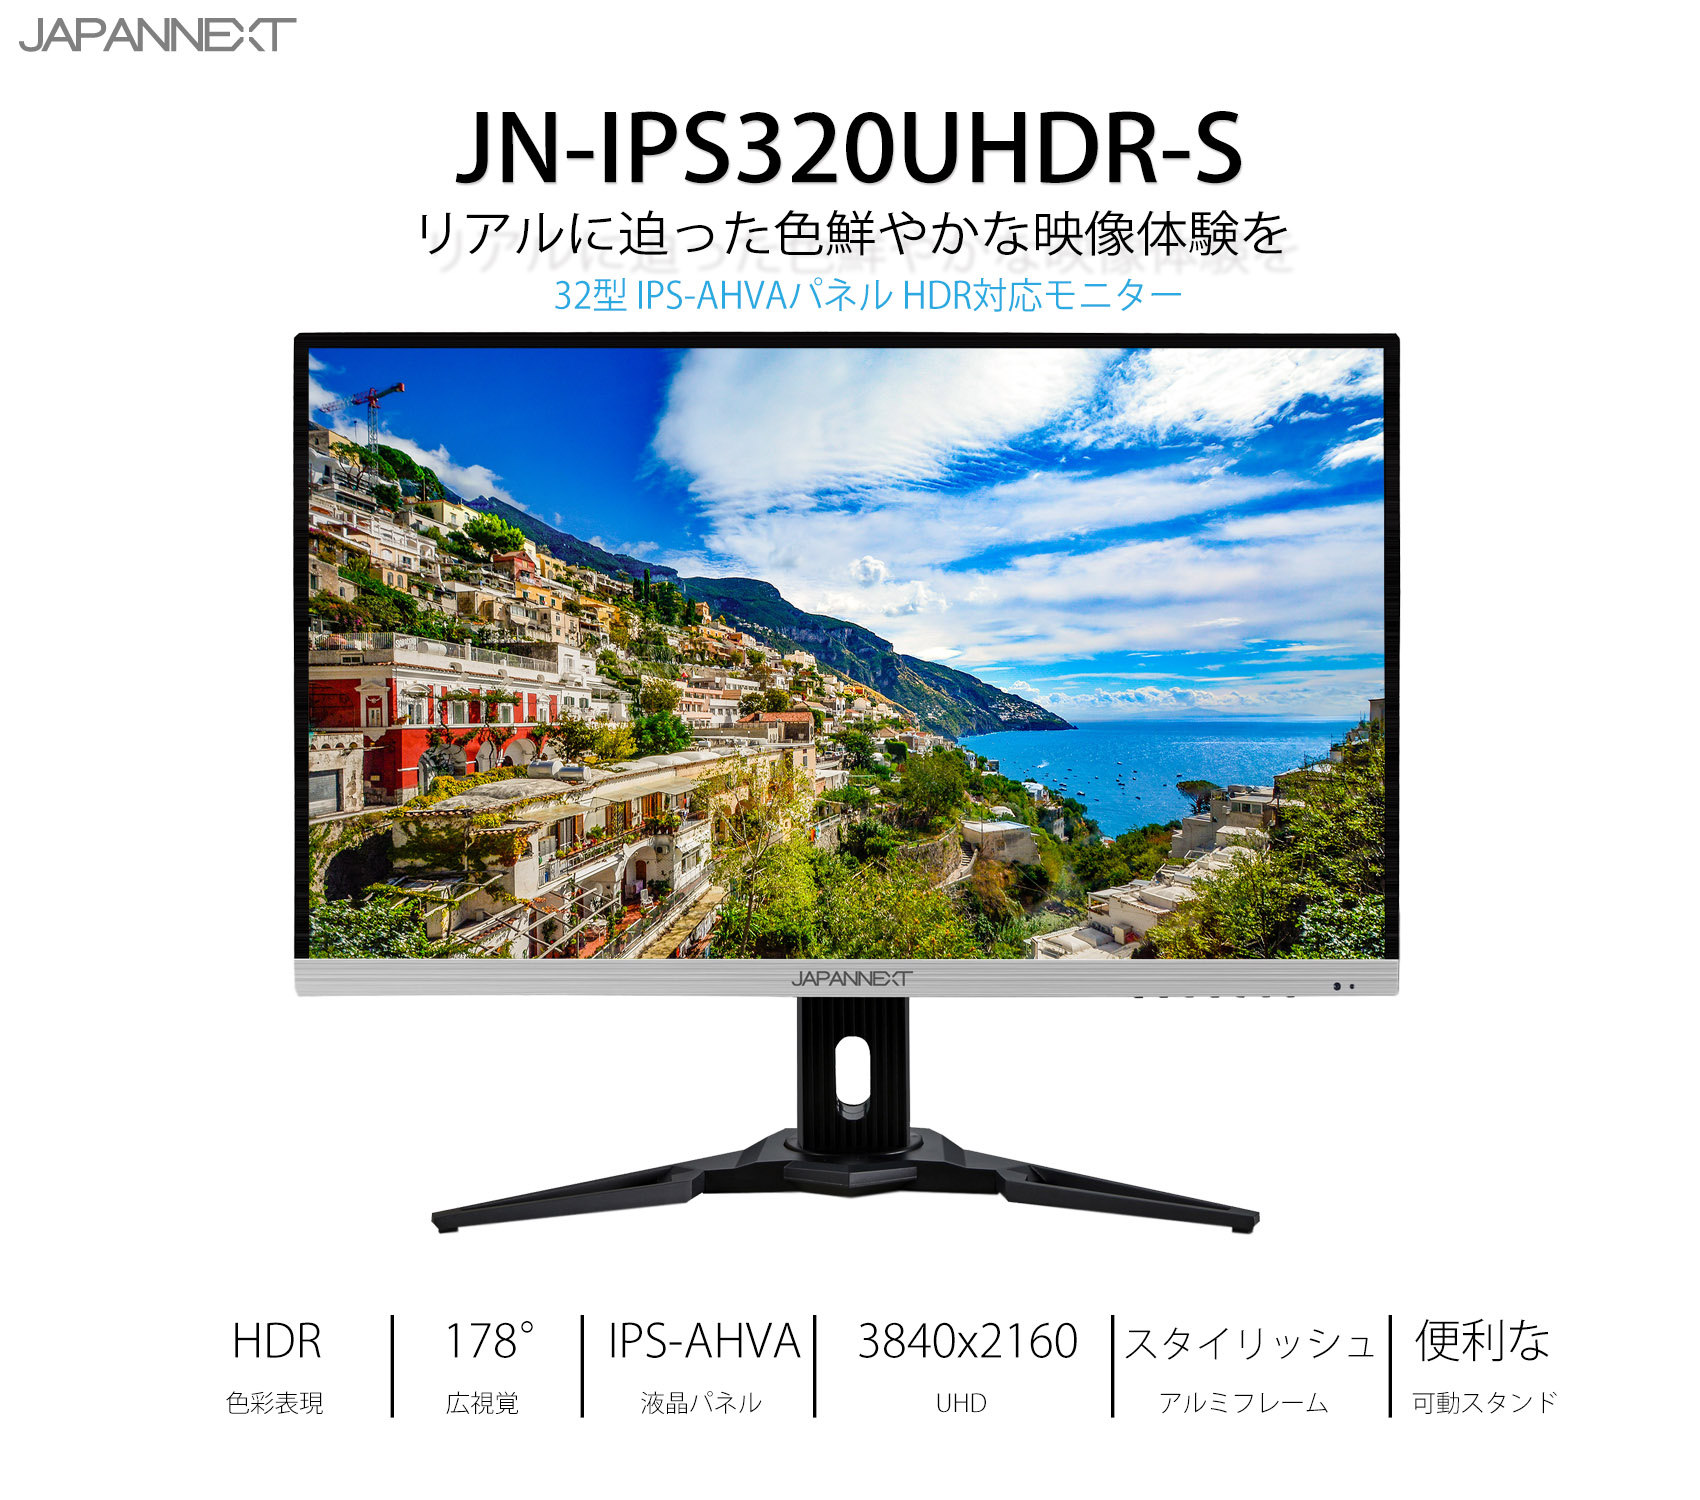 アトランティス JAPANNEXT JN-IPS320UHDR (-S) [32インチ] 機種で